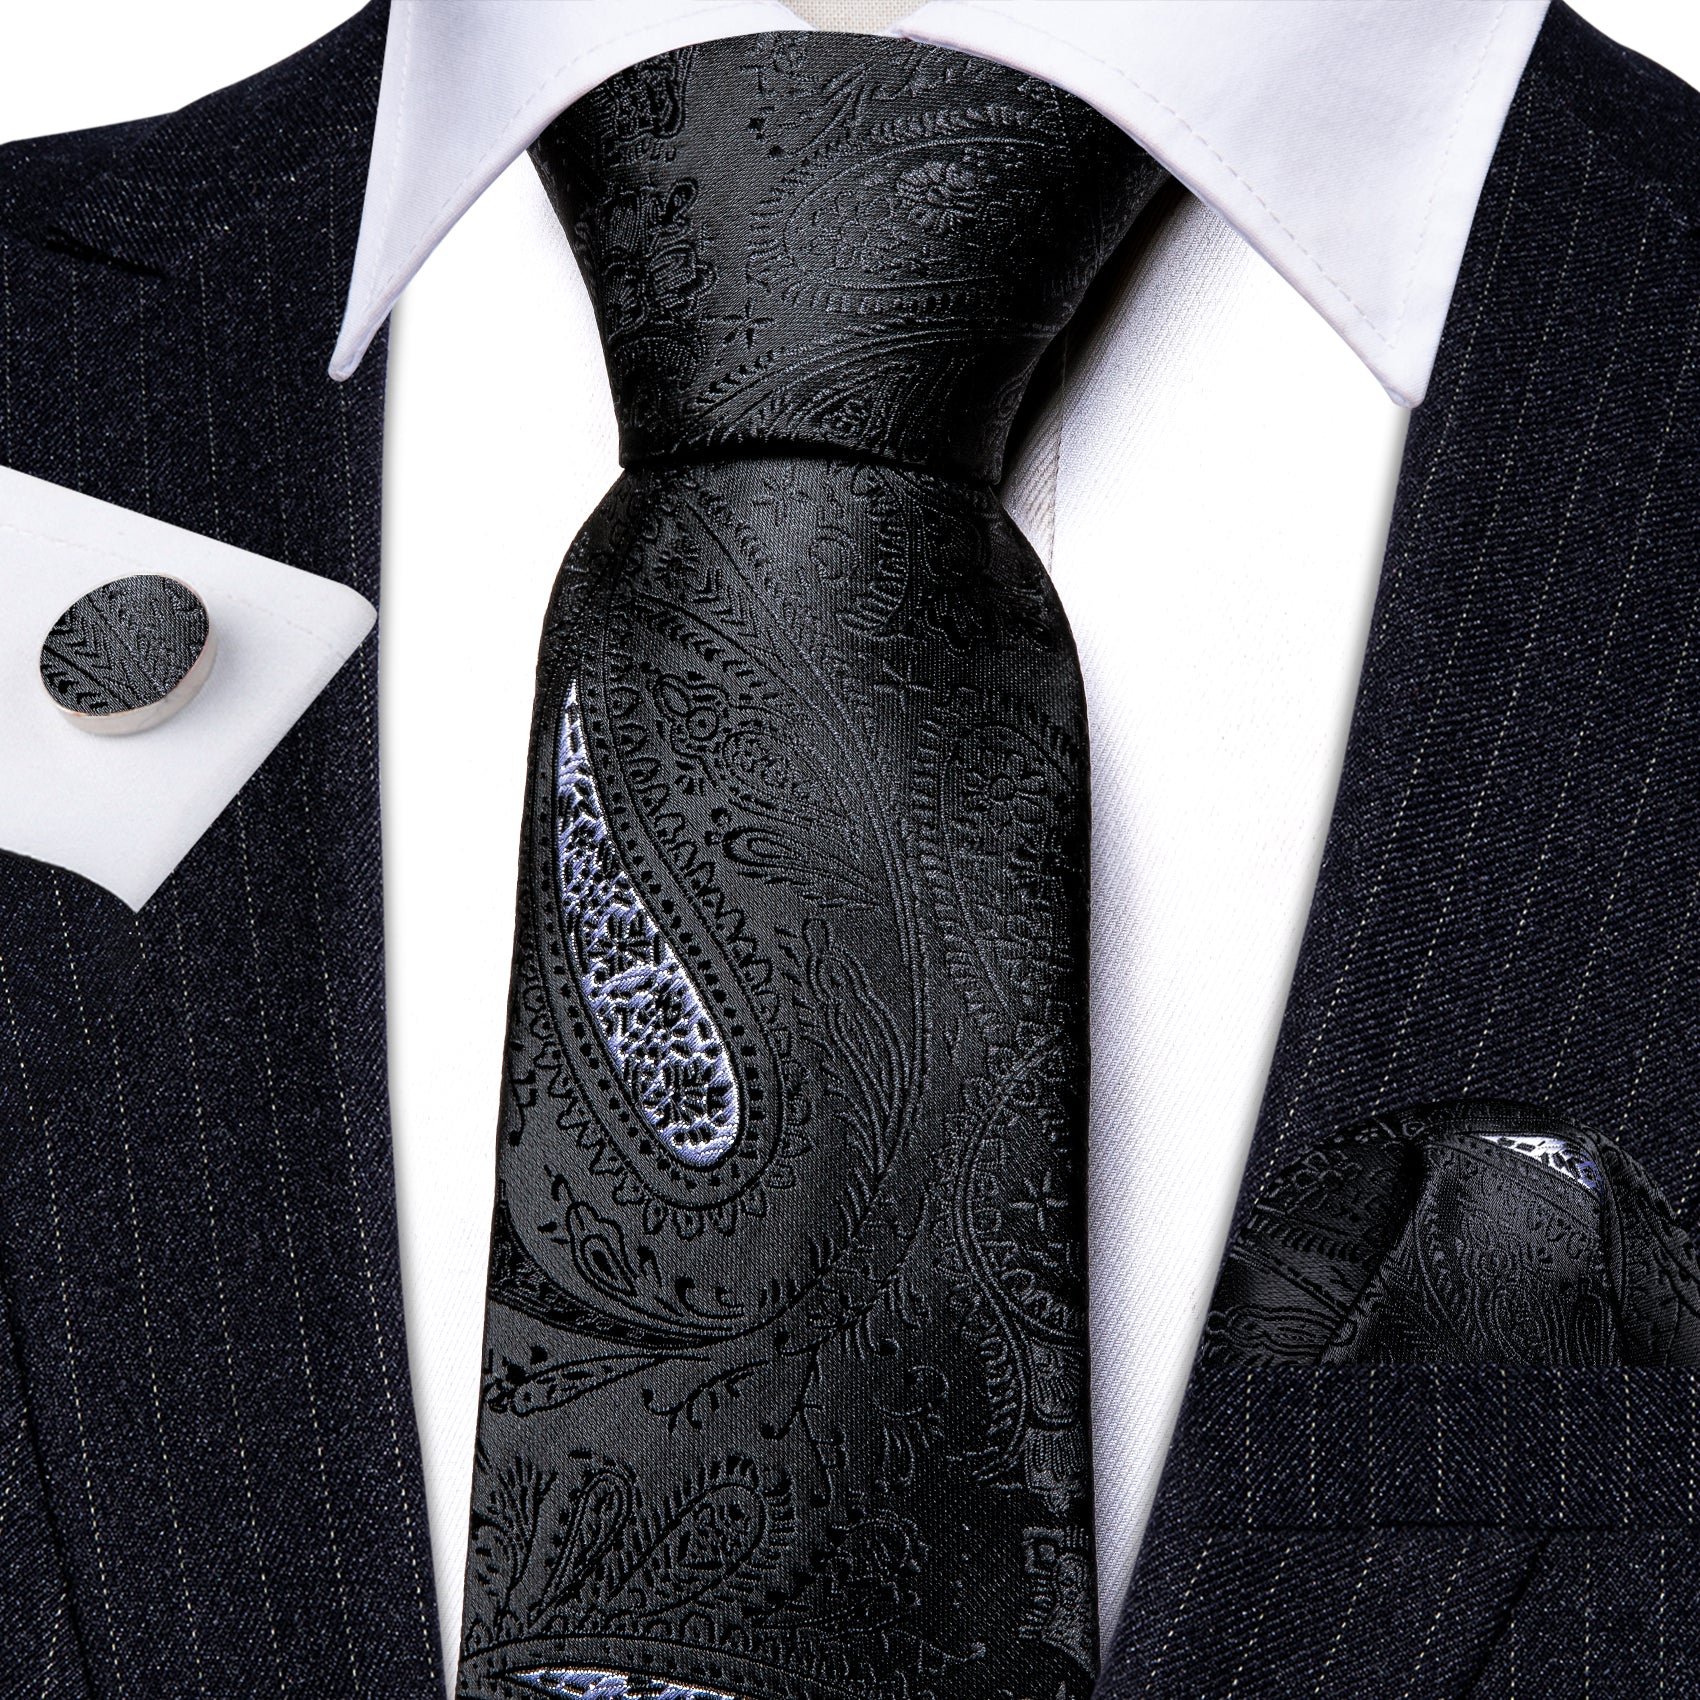 Black Paisley Silk Tie Handkerchief Cufflinks Set